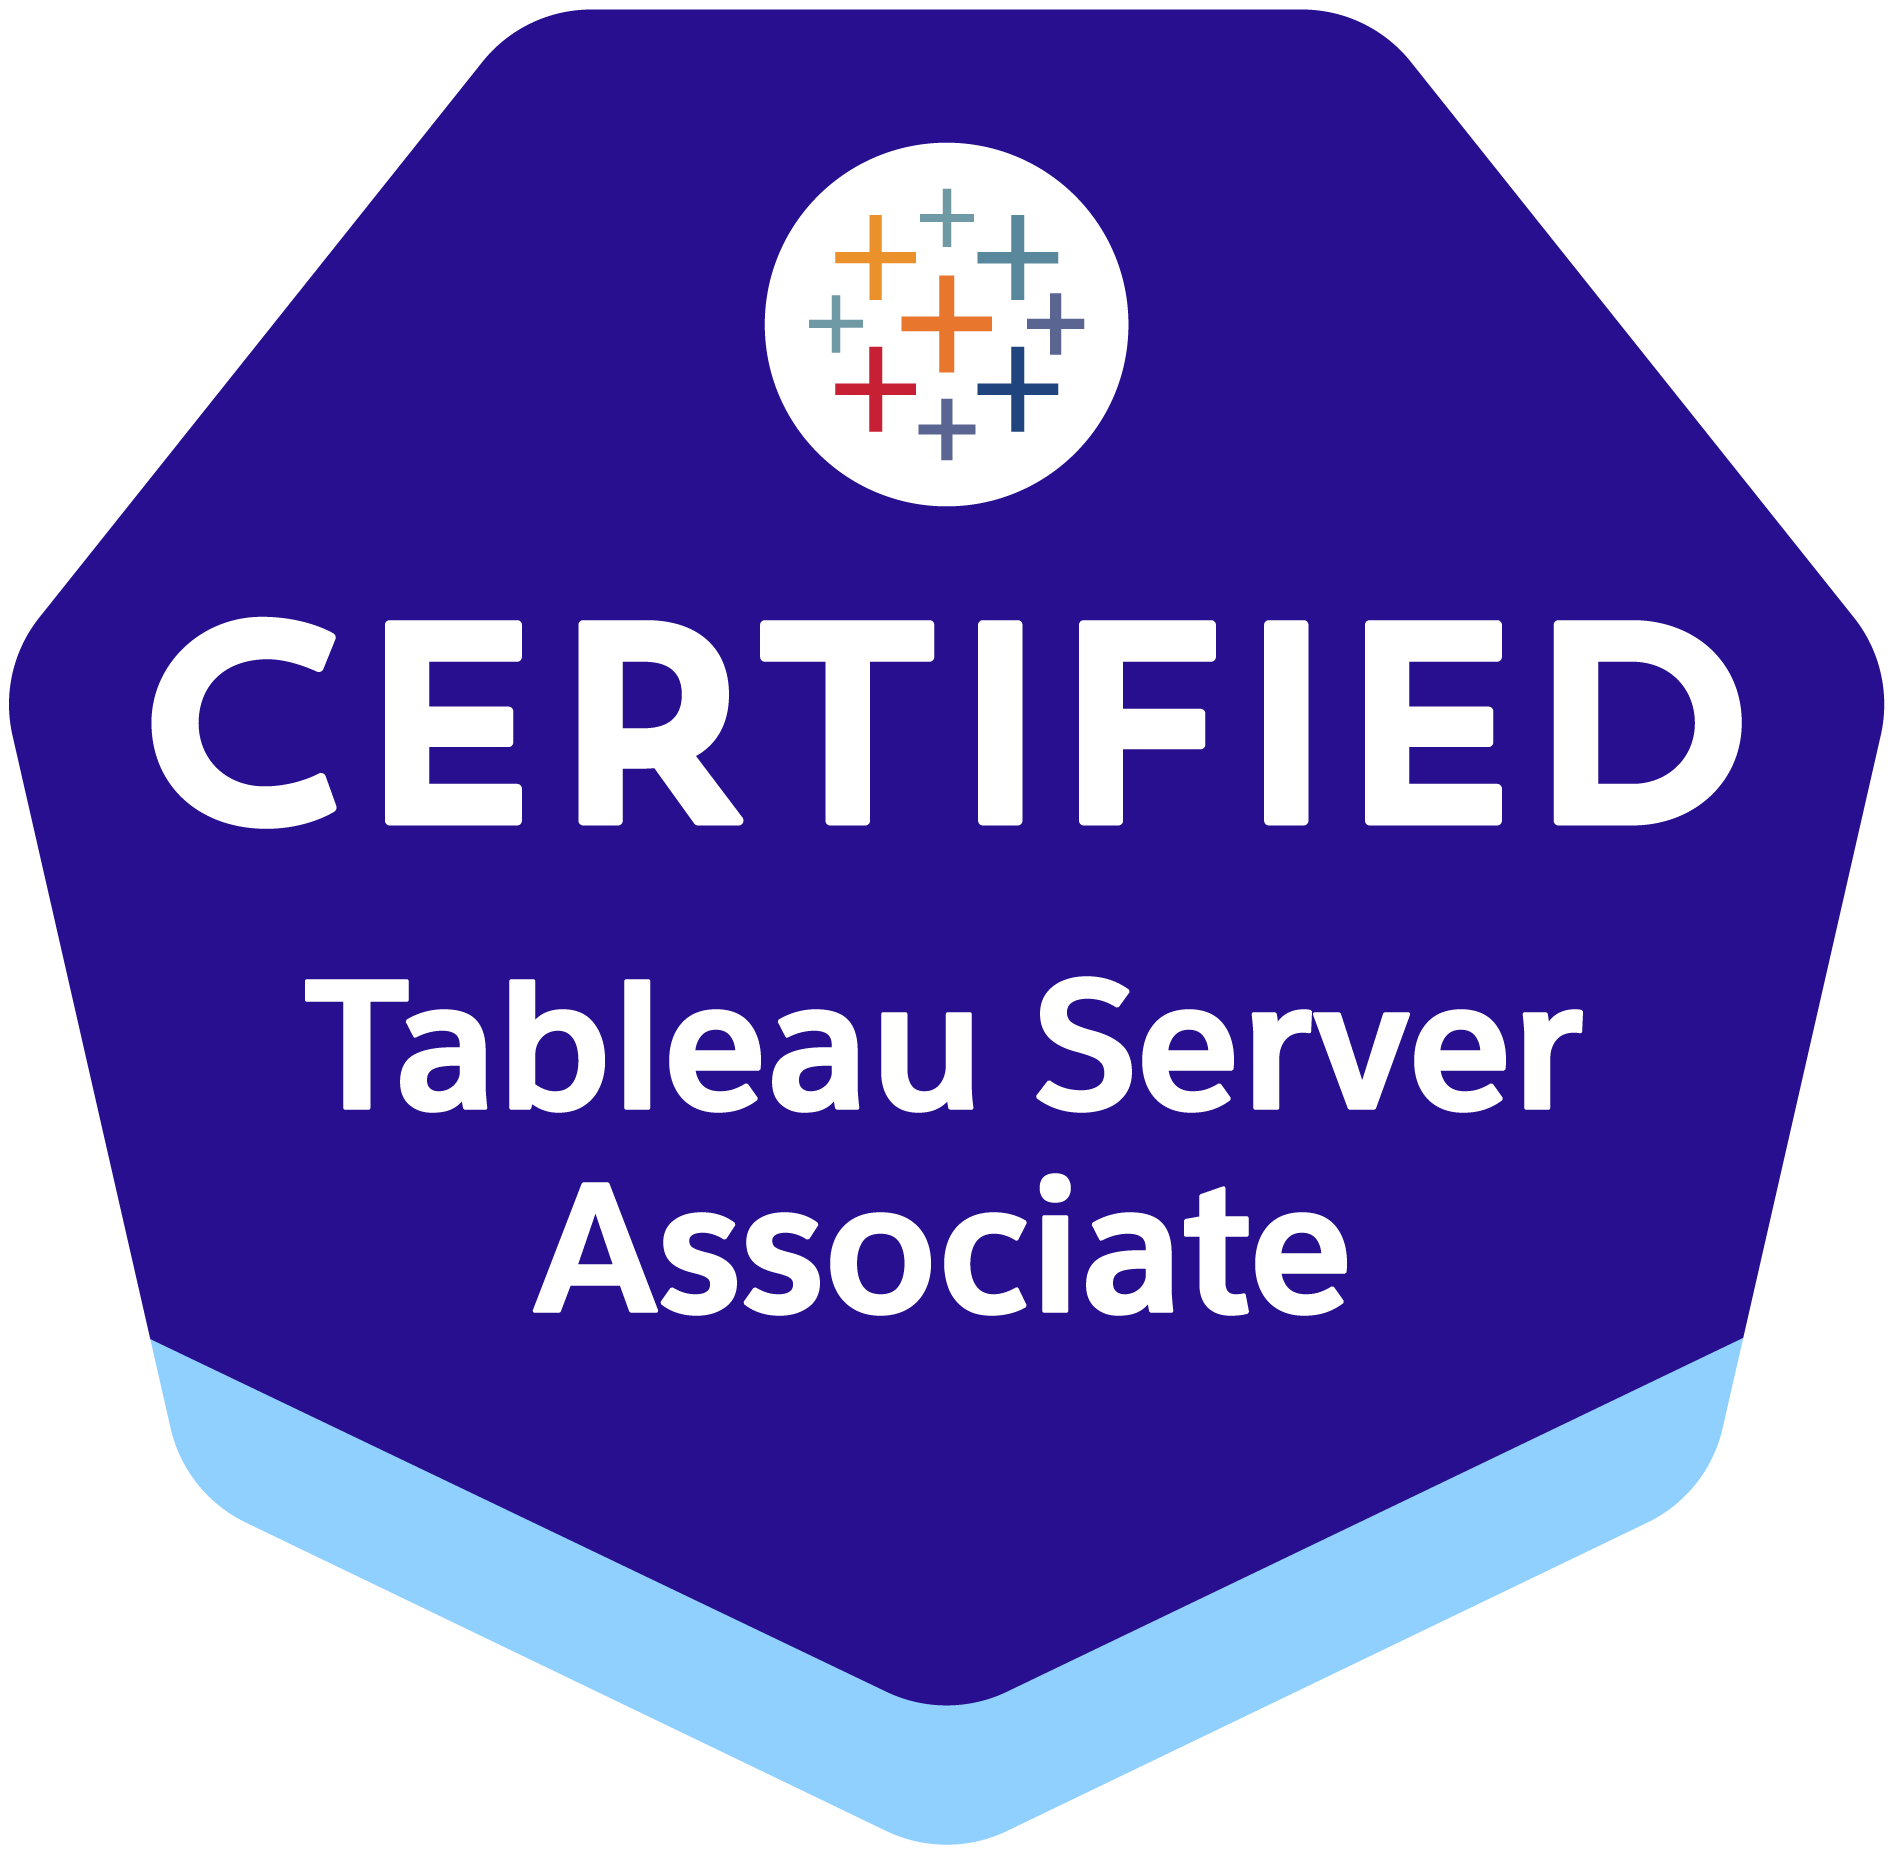 The Tableau Server Certified Associate Certificate